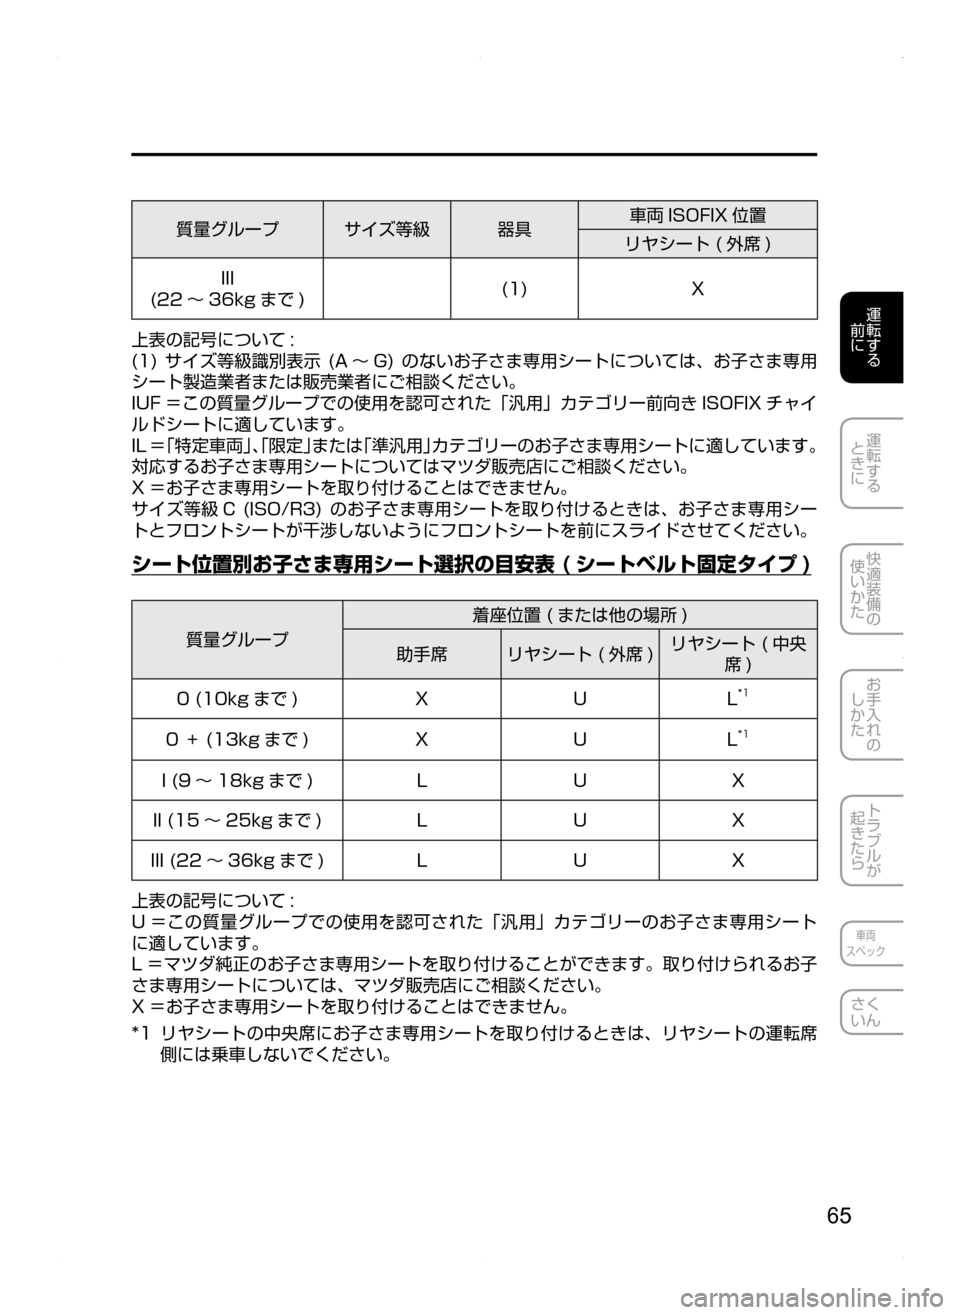 MAZDA MODEL AXELA HYBRID 2014  アクセラハイブリッド｜取扱説明書 (in Japanese) 65
運転する
.
前に
運転する
.
ときに
快適装備の
使いかた
お手入れの
しかた
トラブルが
起きたら
車両
スペック
さく
いん
質量グループサイズ等�